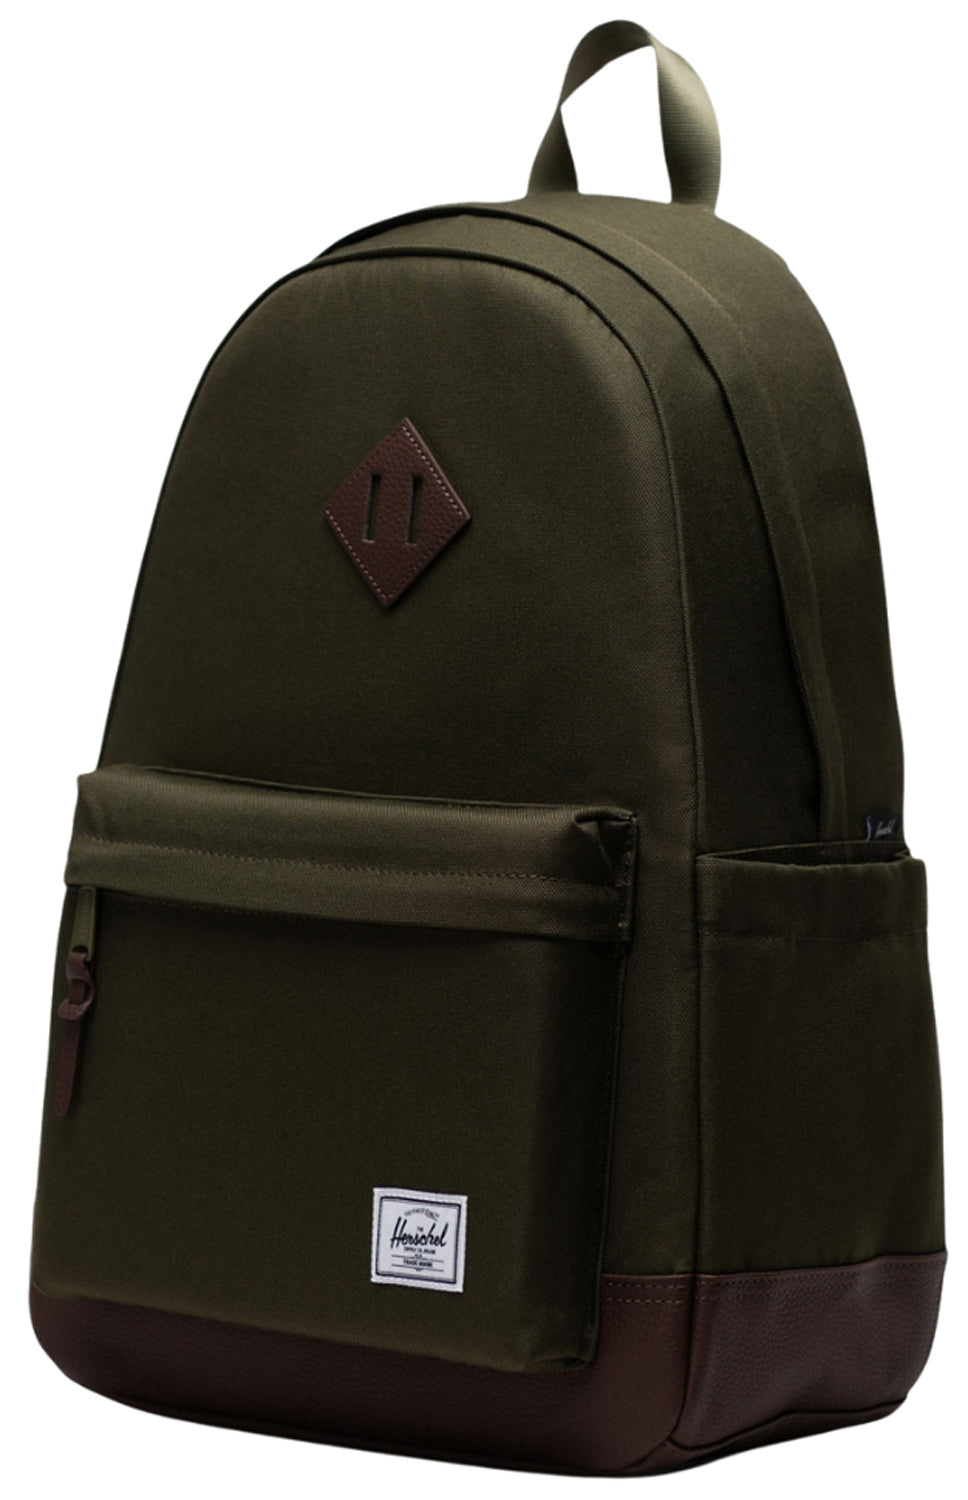 Herschel Heritage Backpack - Ivy Green